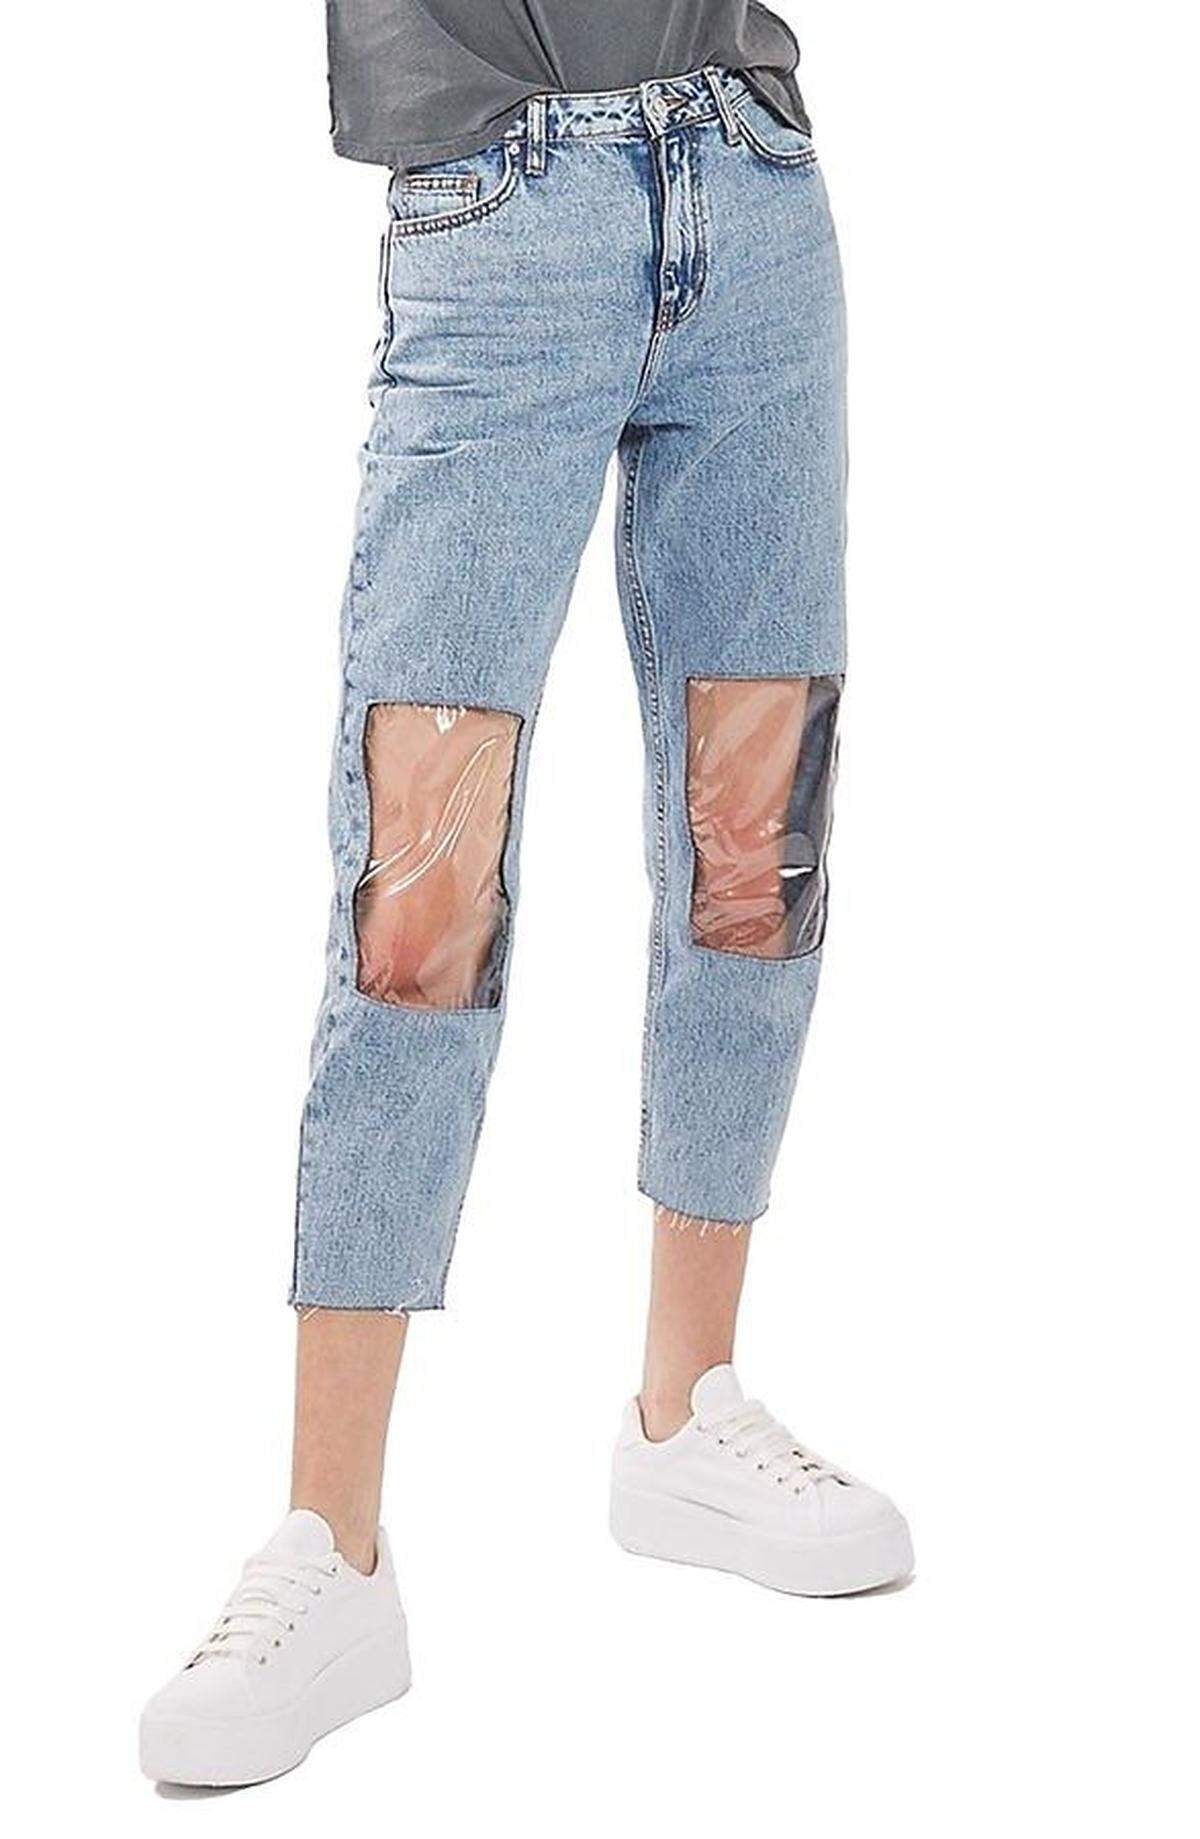 Nordstrom musste sich auch Klagen der Kunden anhören, als diese Jeans von Topshop verkauft wurden: zwar im wieder modernen "Mom"-Schnitt, aber mit Sichtfenstern aus Plastik auf Höhe der Knie - um 92 Euro.